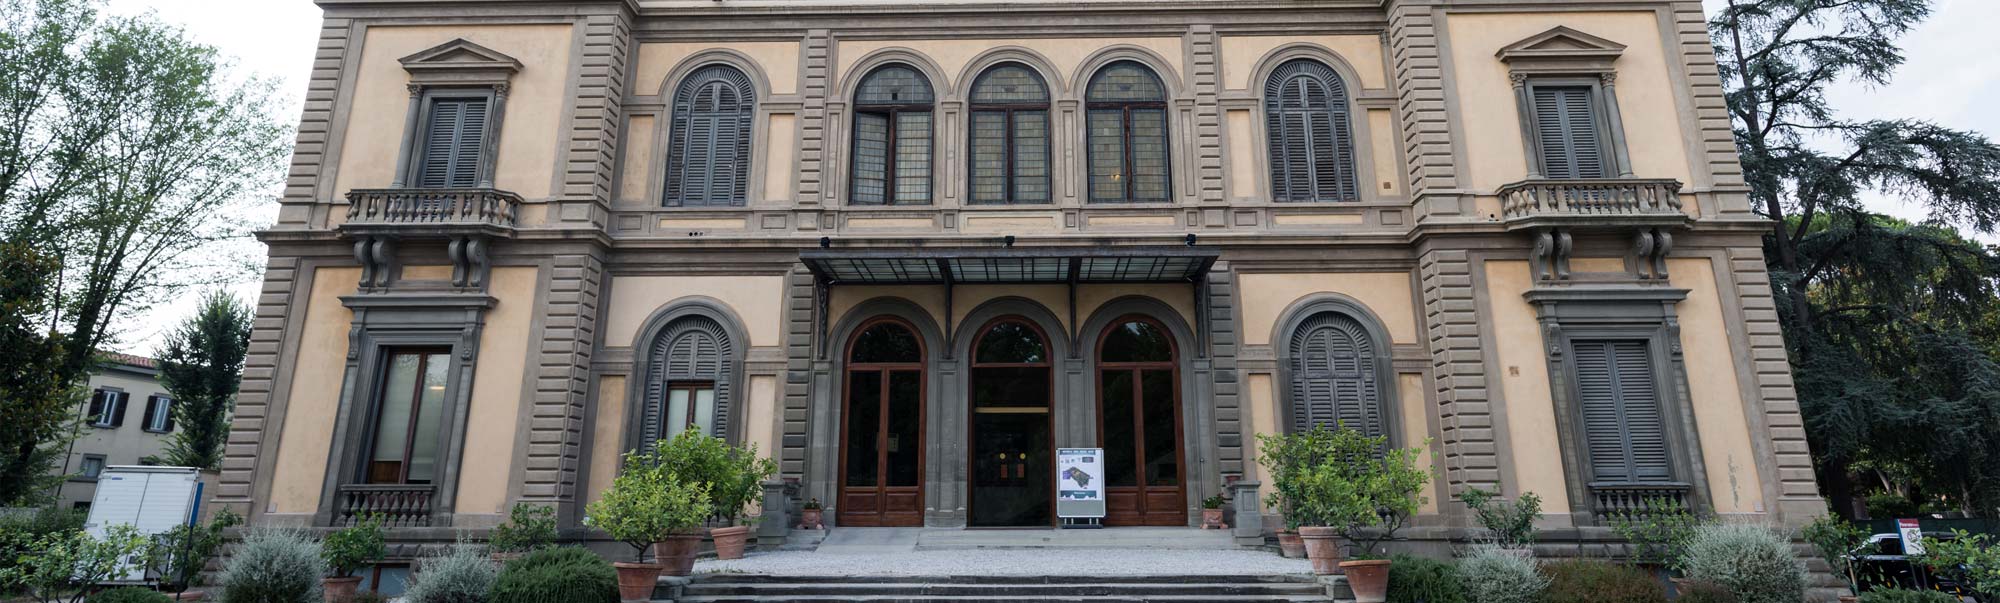 Hotel Palazzo Vecchio Firenze centro - Sito Ufficiale |  Albergo Tre stelle Firenze vicino Stazione